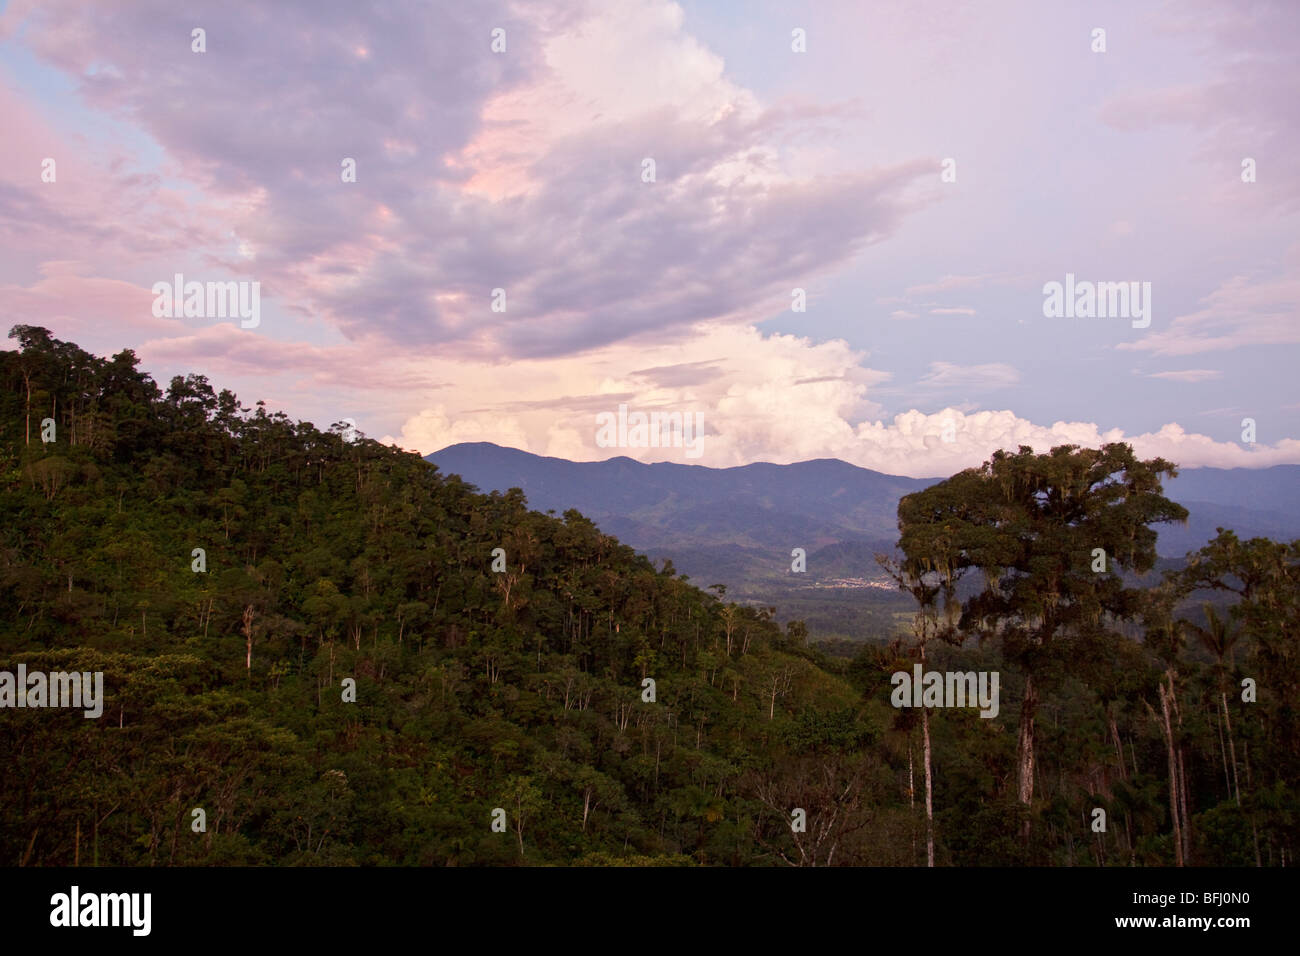 Ein Blick auf den Regenwald im Podocarpus Nationalpark im Südosten Ecuadors. Stockfoto